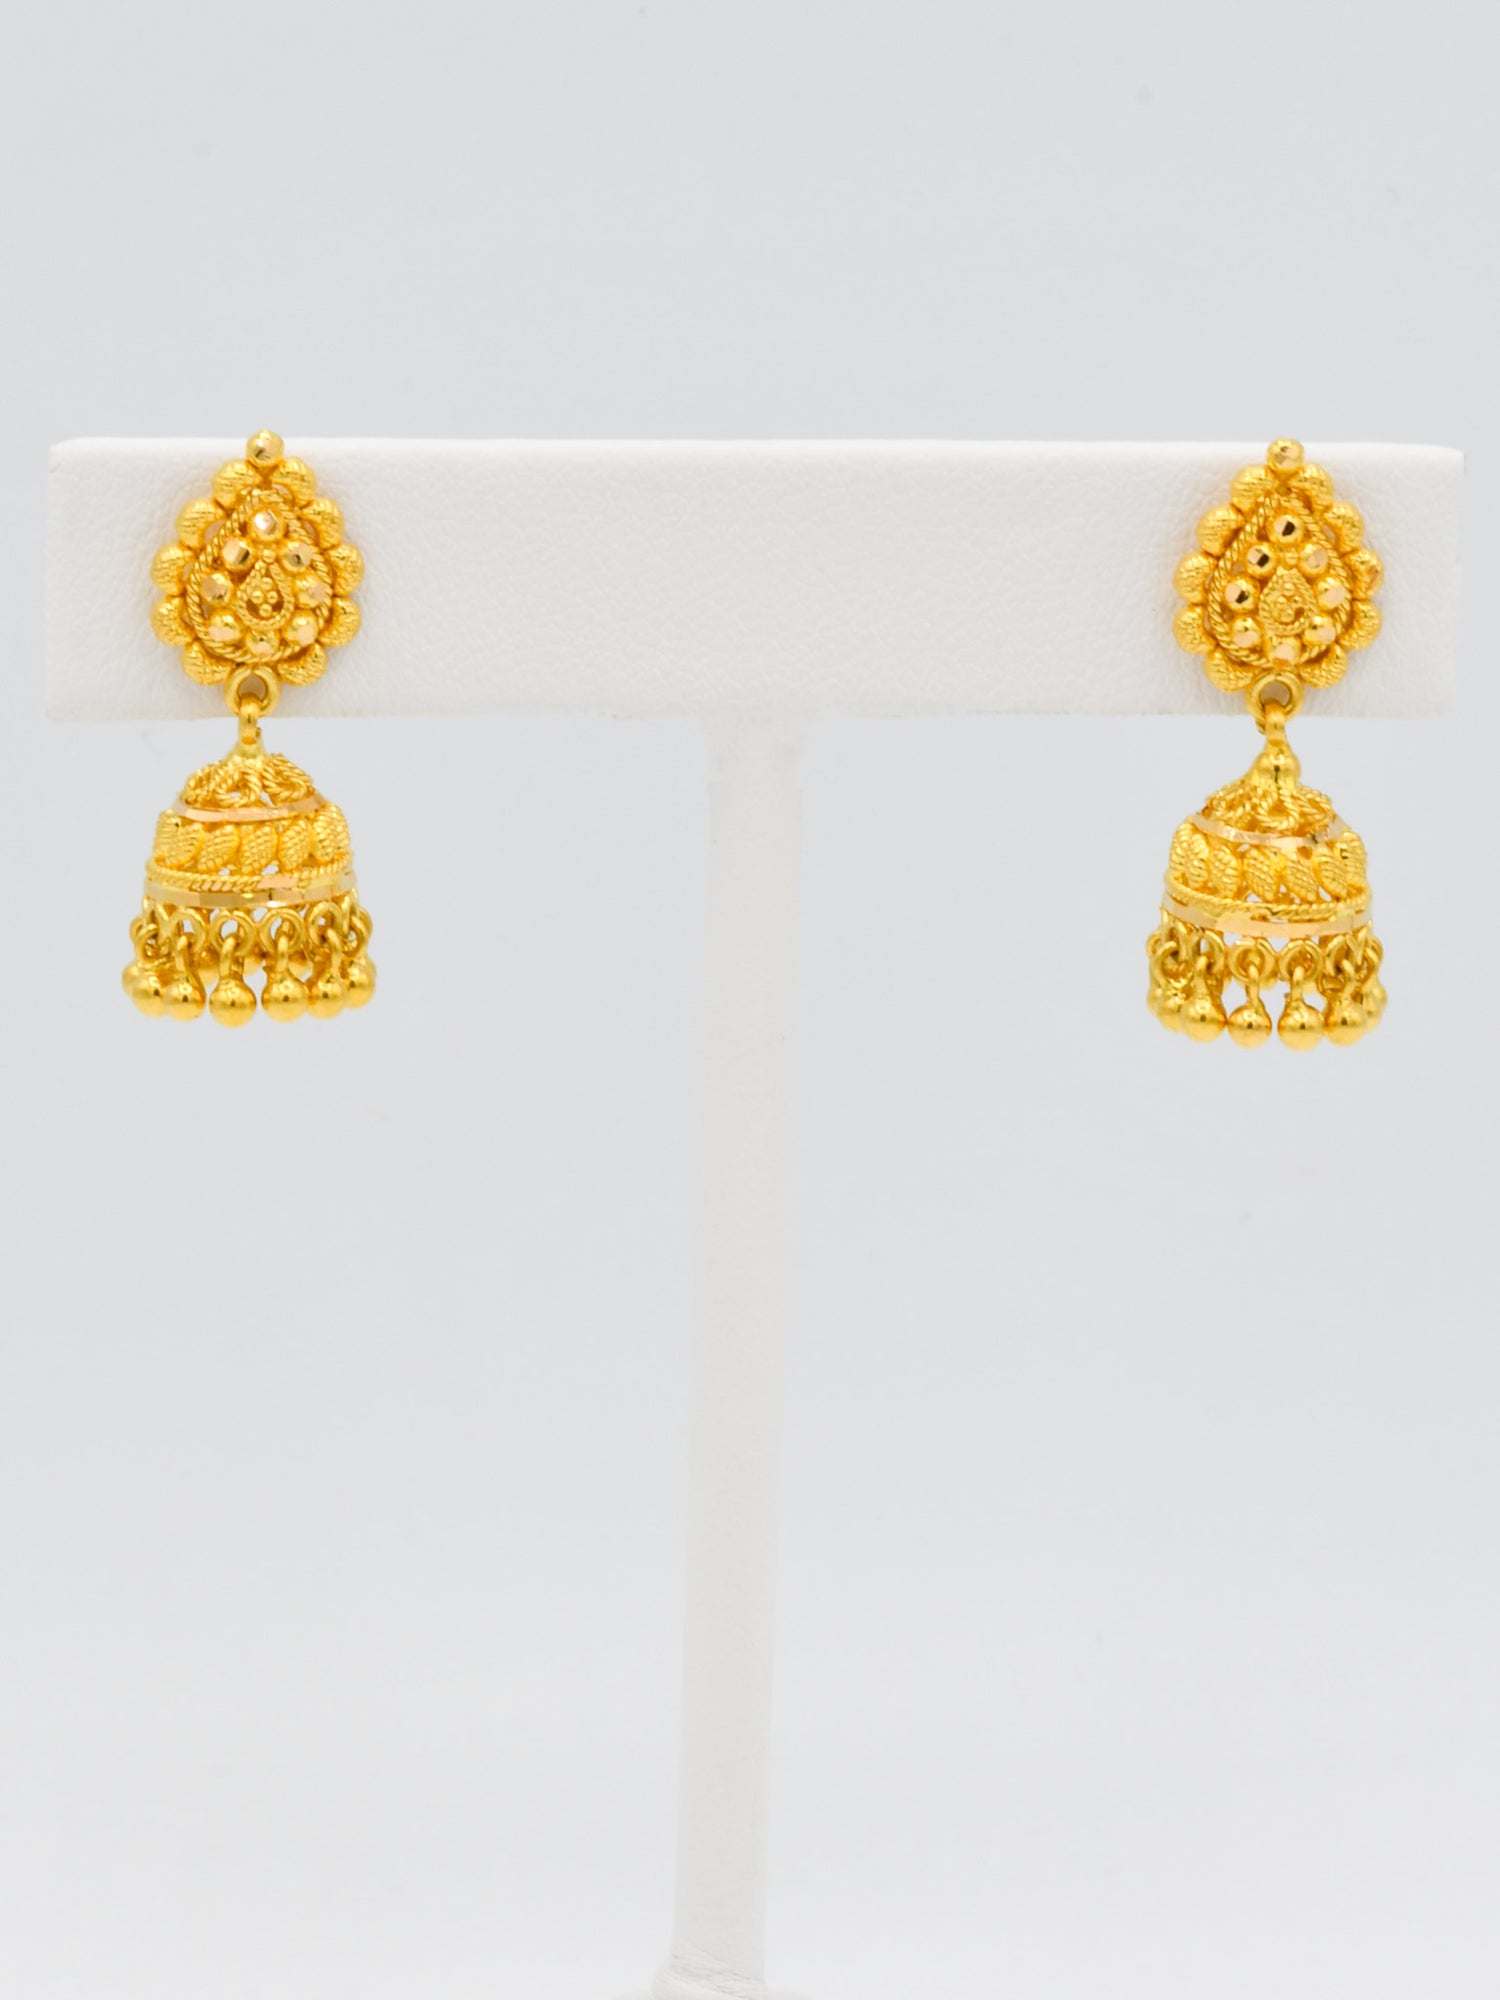 22ct Gold Filigree Jhumki Earrings - Roop Darshan